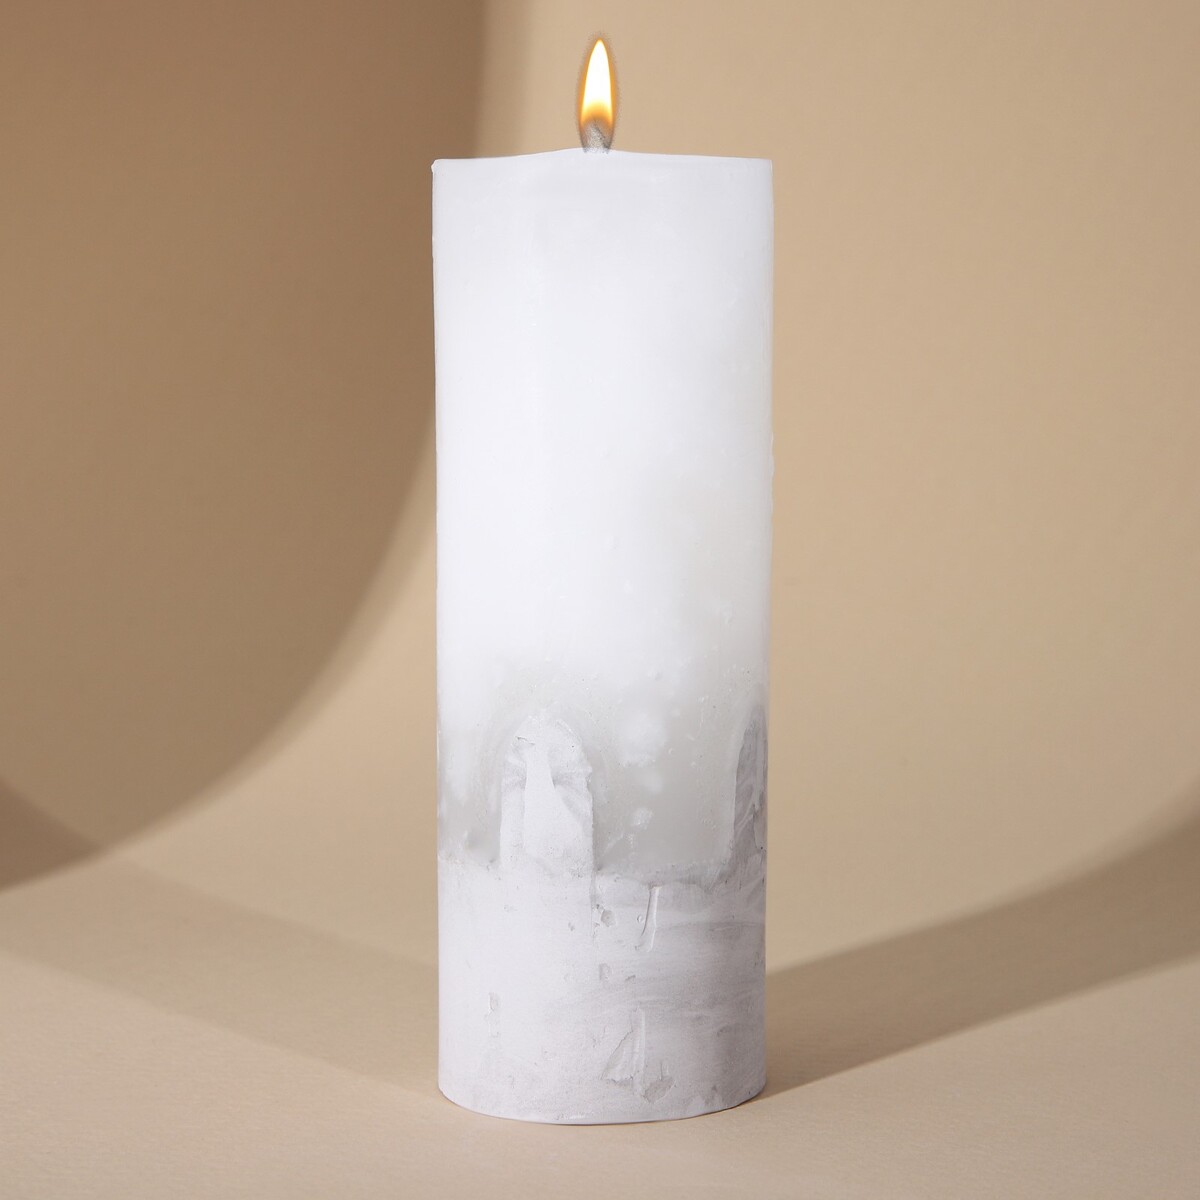 Свеча интерьерная белая с бетоном, 14 х 5 см свеча интерьерная женская фигура белая